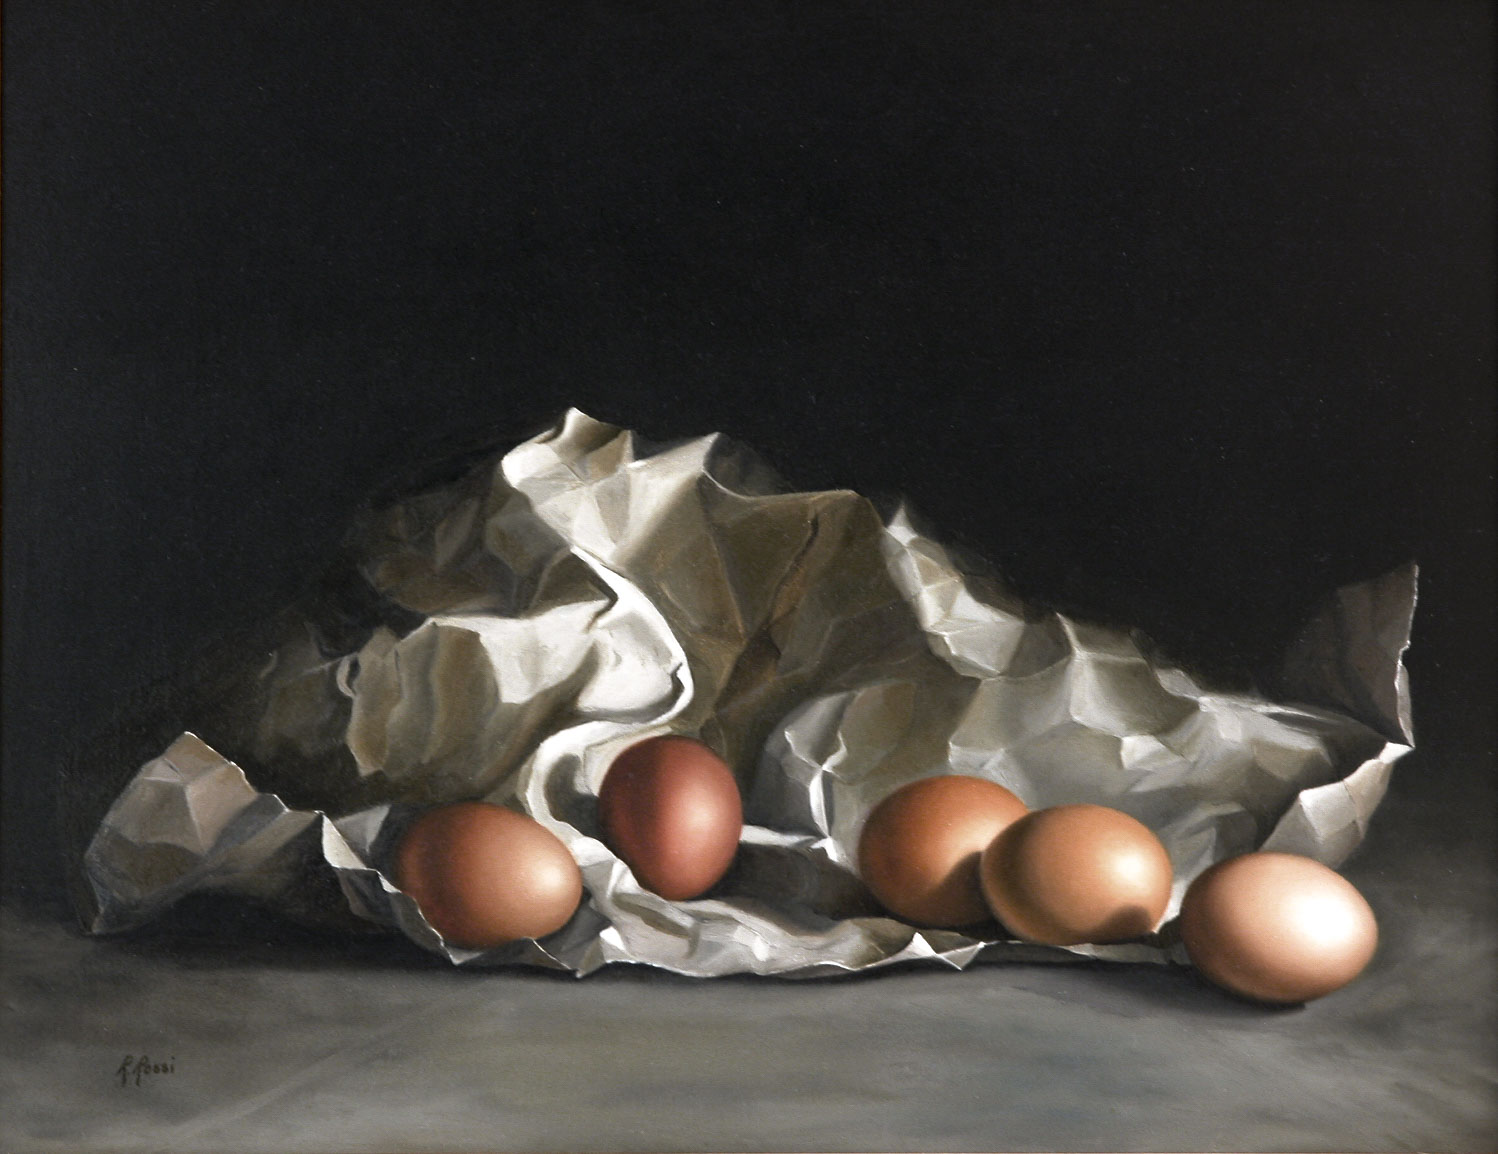 2009 roberta rossi – Composizione con uova – olio su tavola – 36 x 46